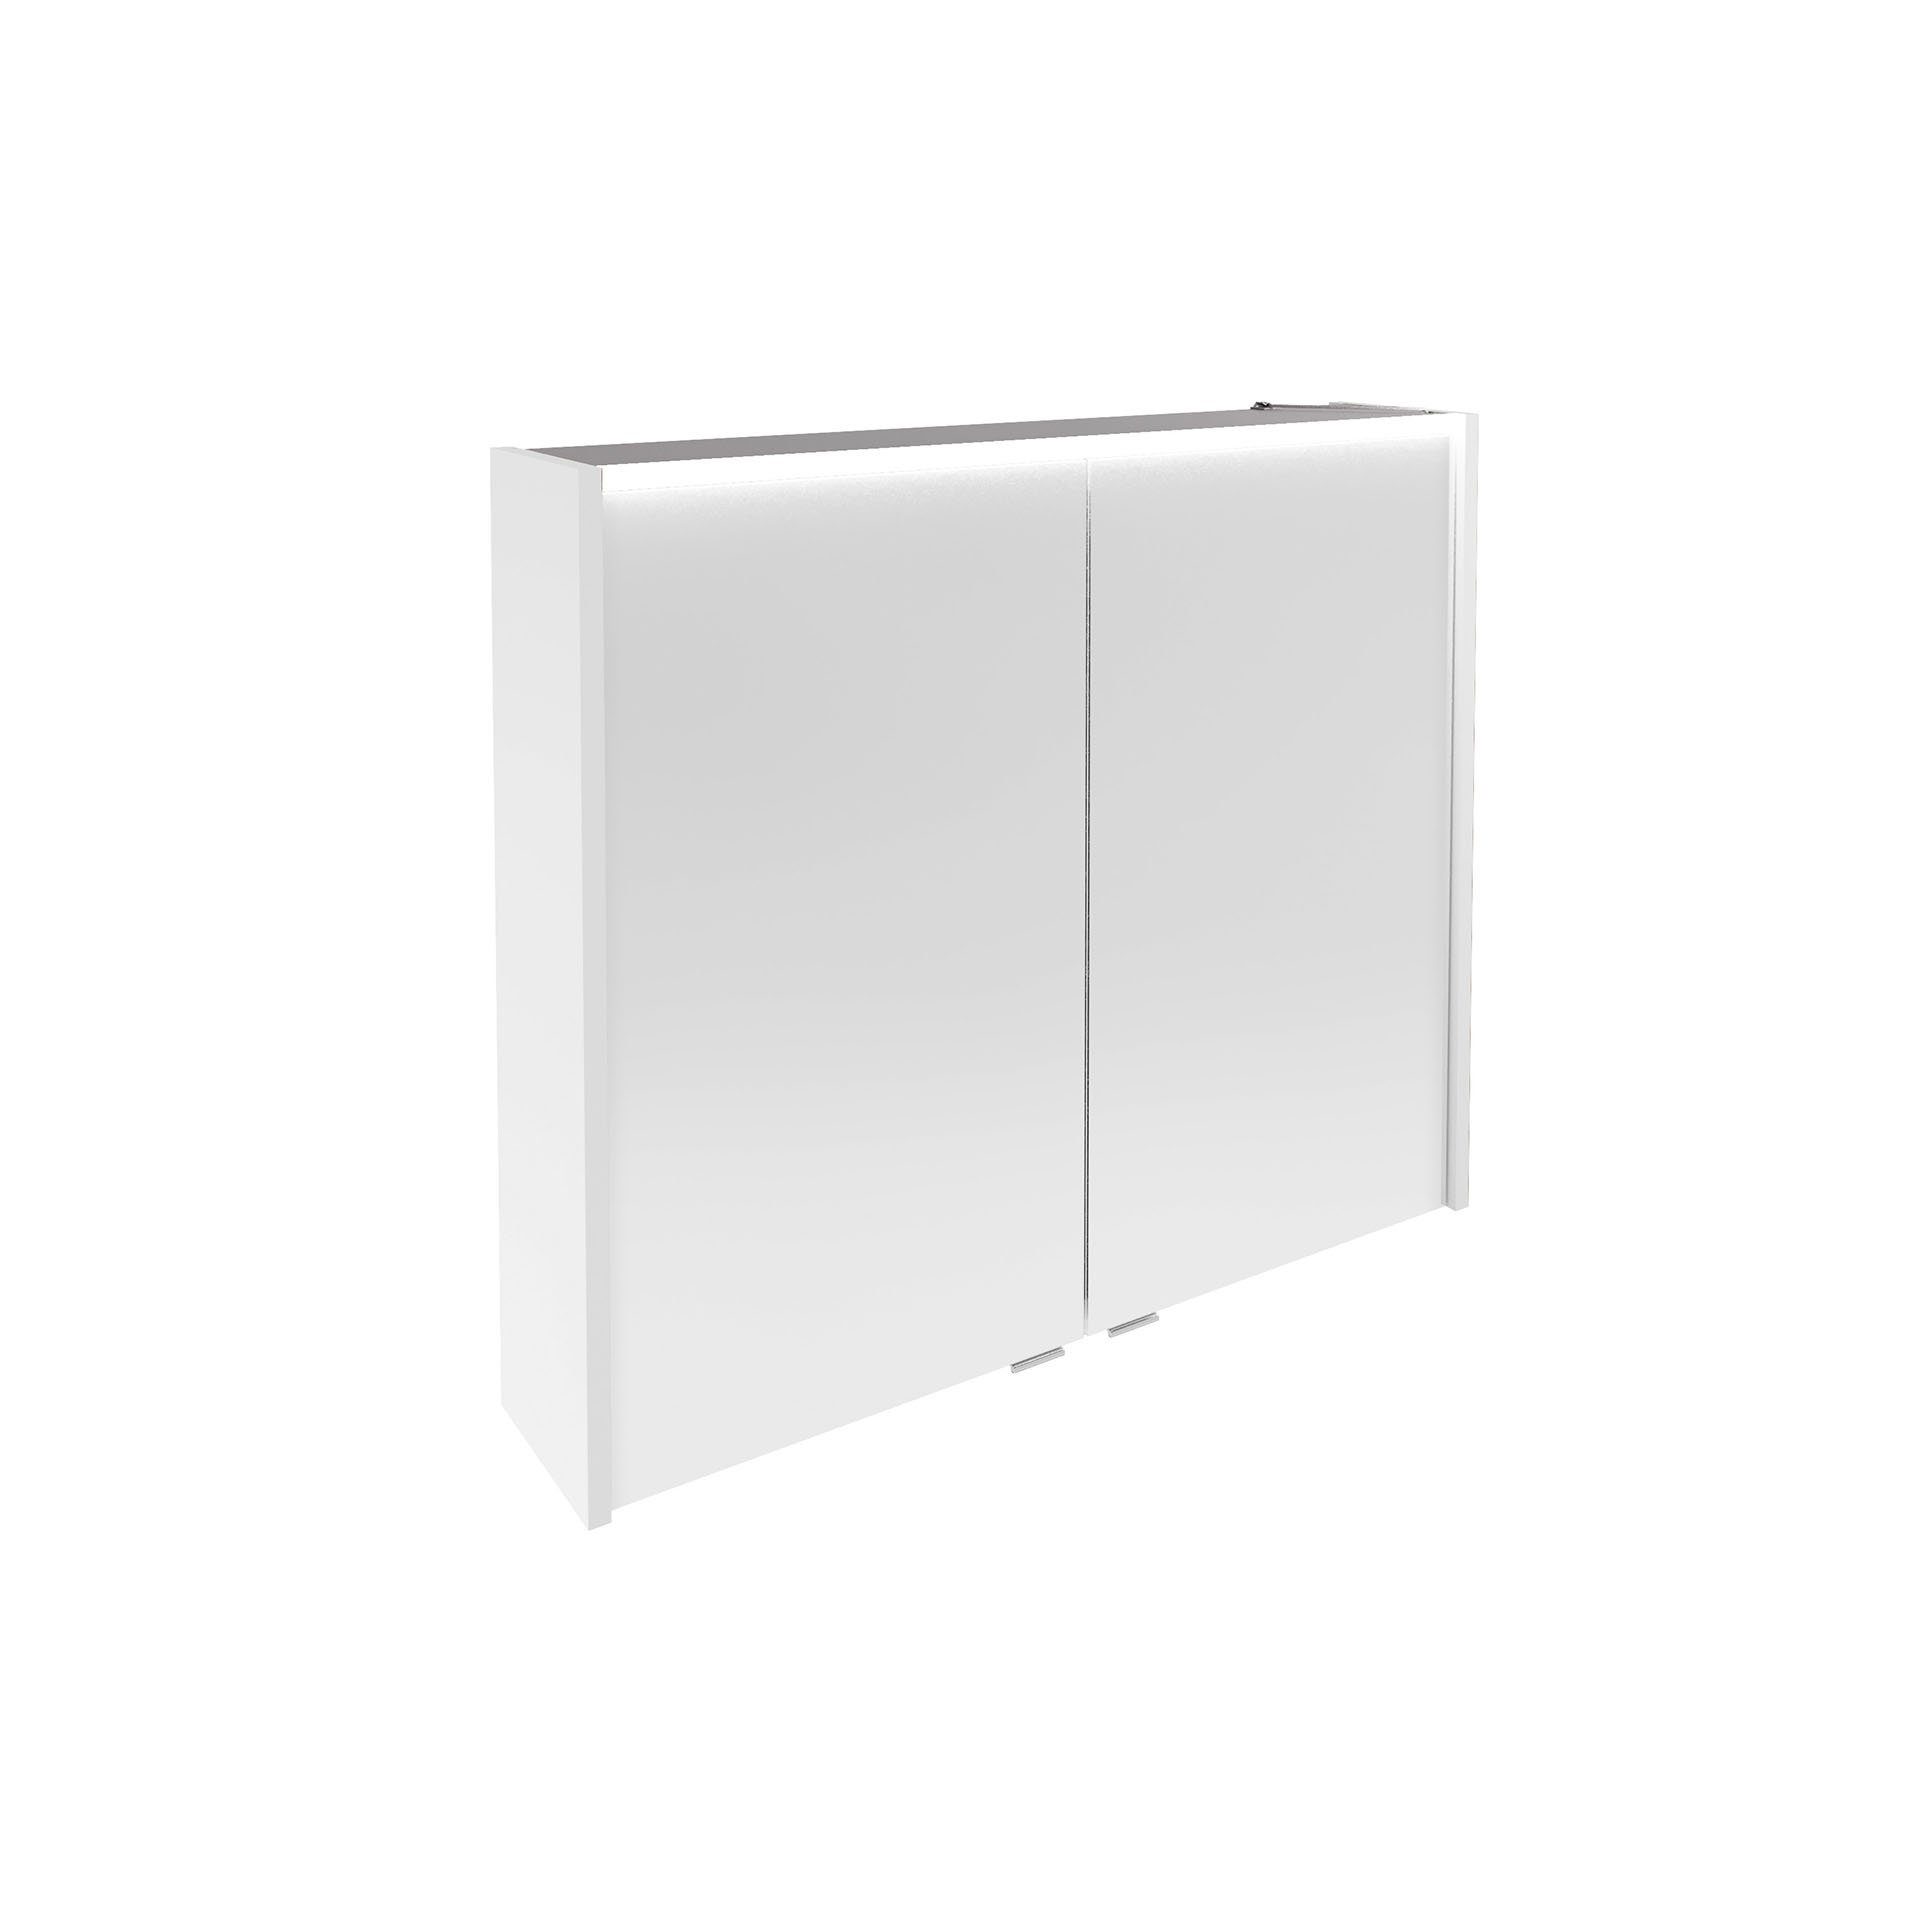 hängend Badezimmerspiegelschrank Verona LED-Spiegelschrank – Weiß vormontiert, FACKELMANN